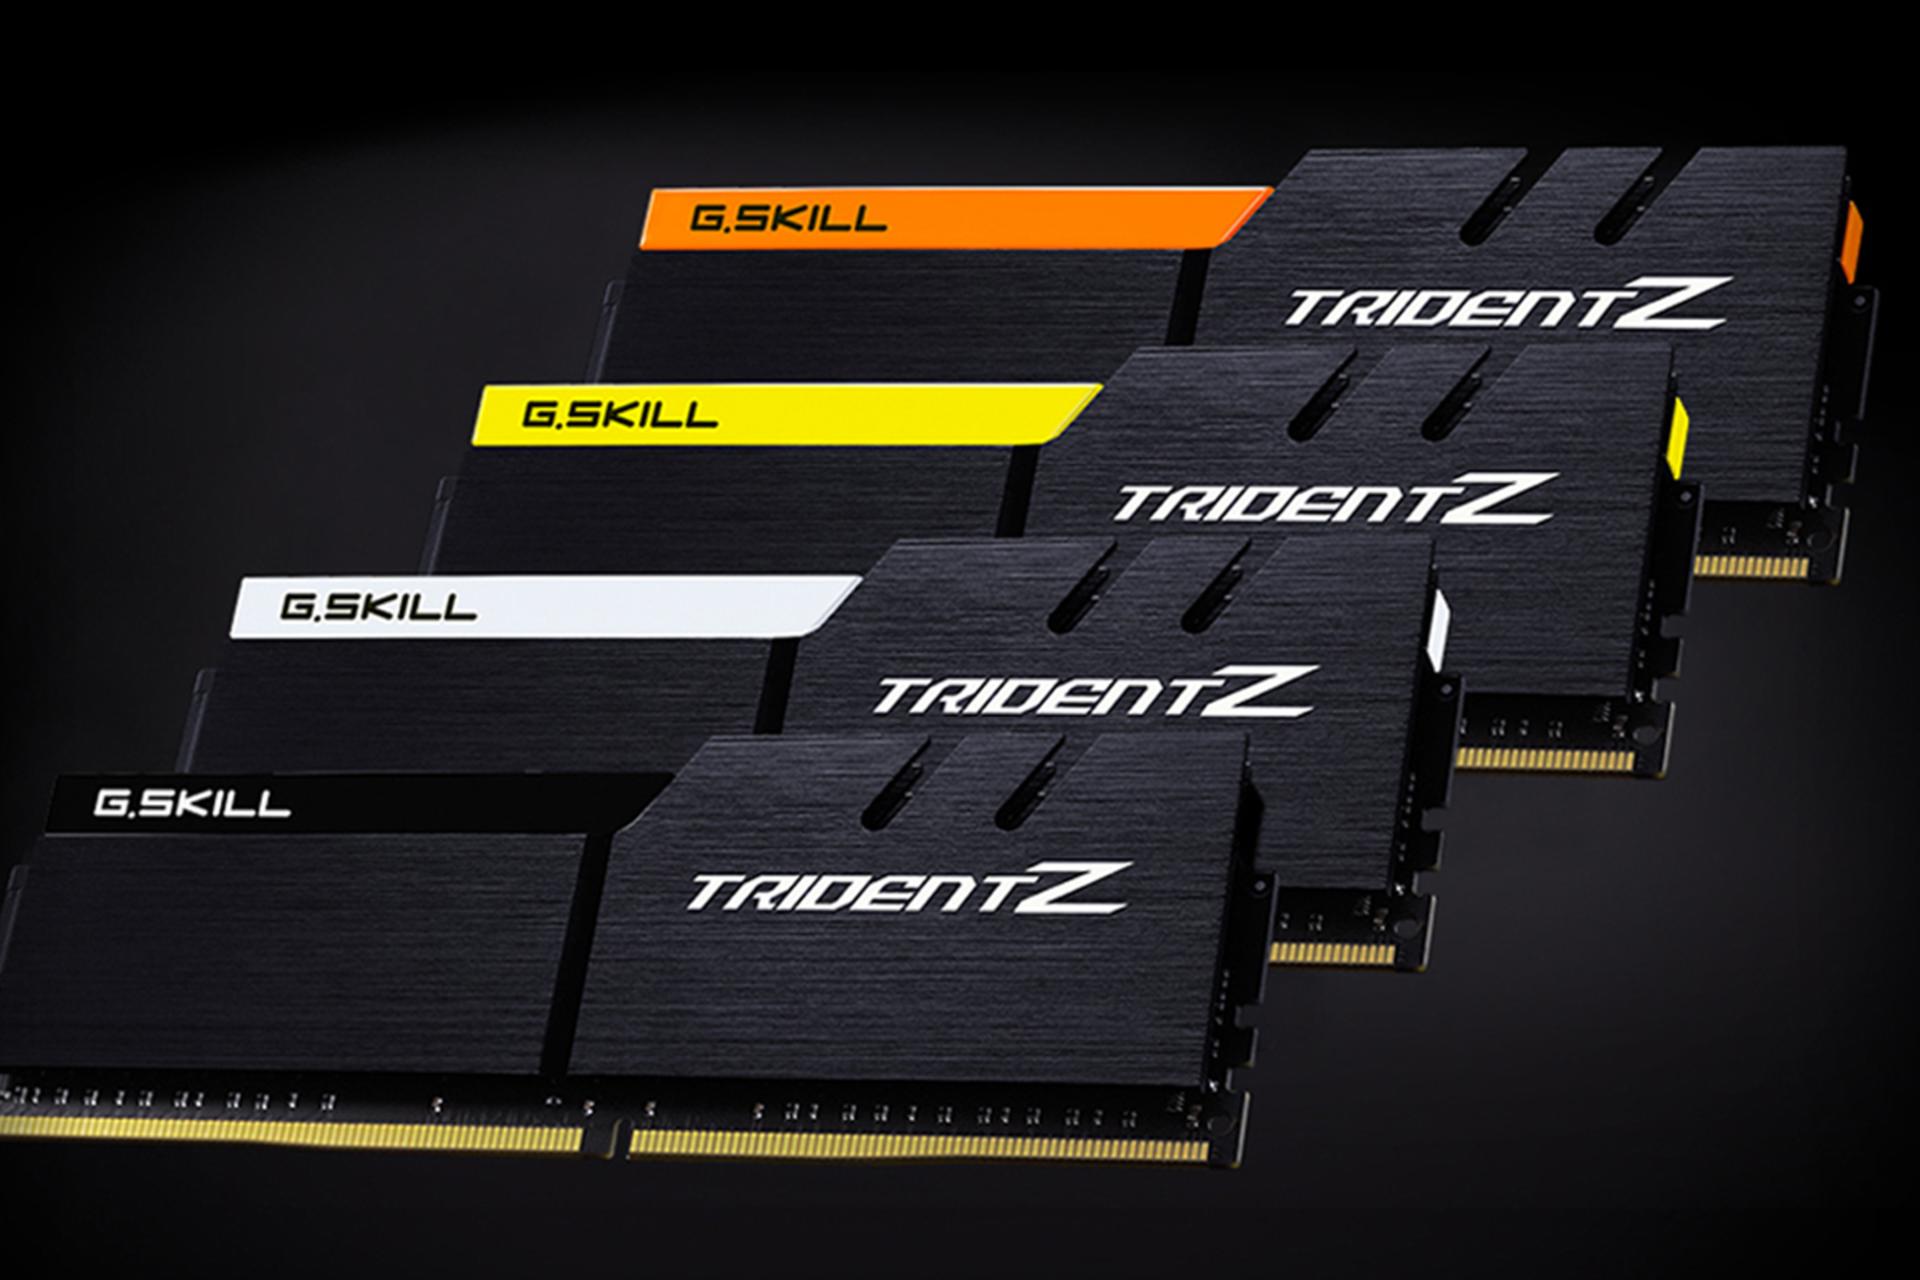 نمای جلو رم جی اسکیل Trident Z ظرفیت 16 گیگابایت (2x8) از نوع DDR4-3200